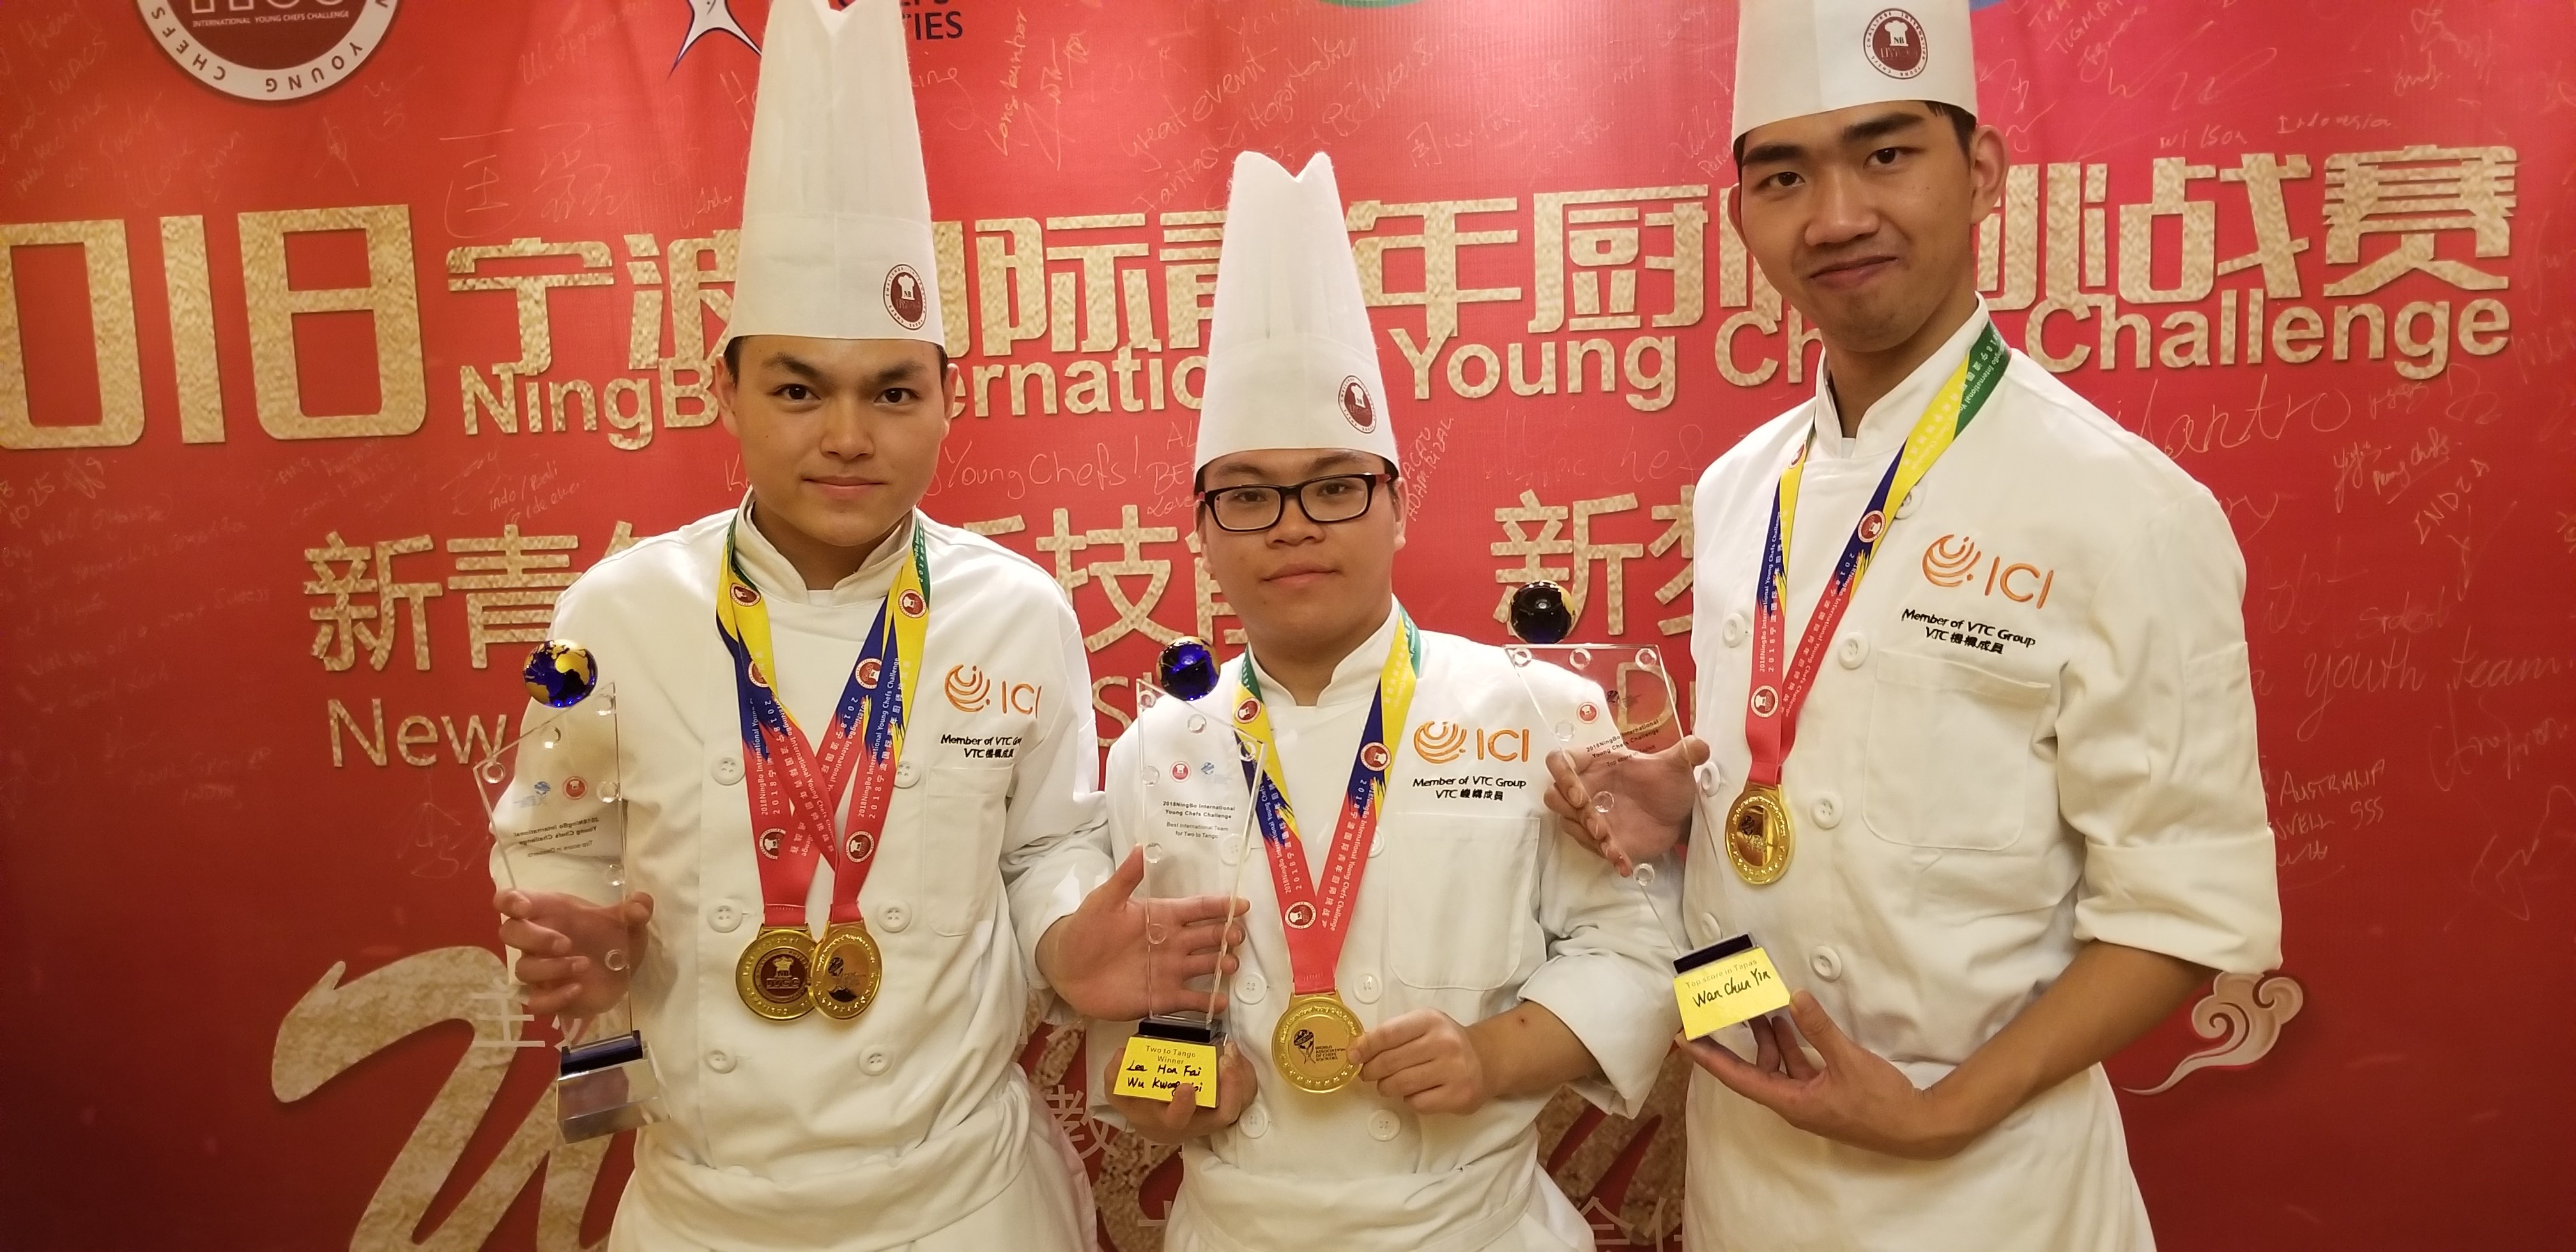 「寧波國際青年廚師挑戰賽」奪5獎